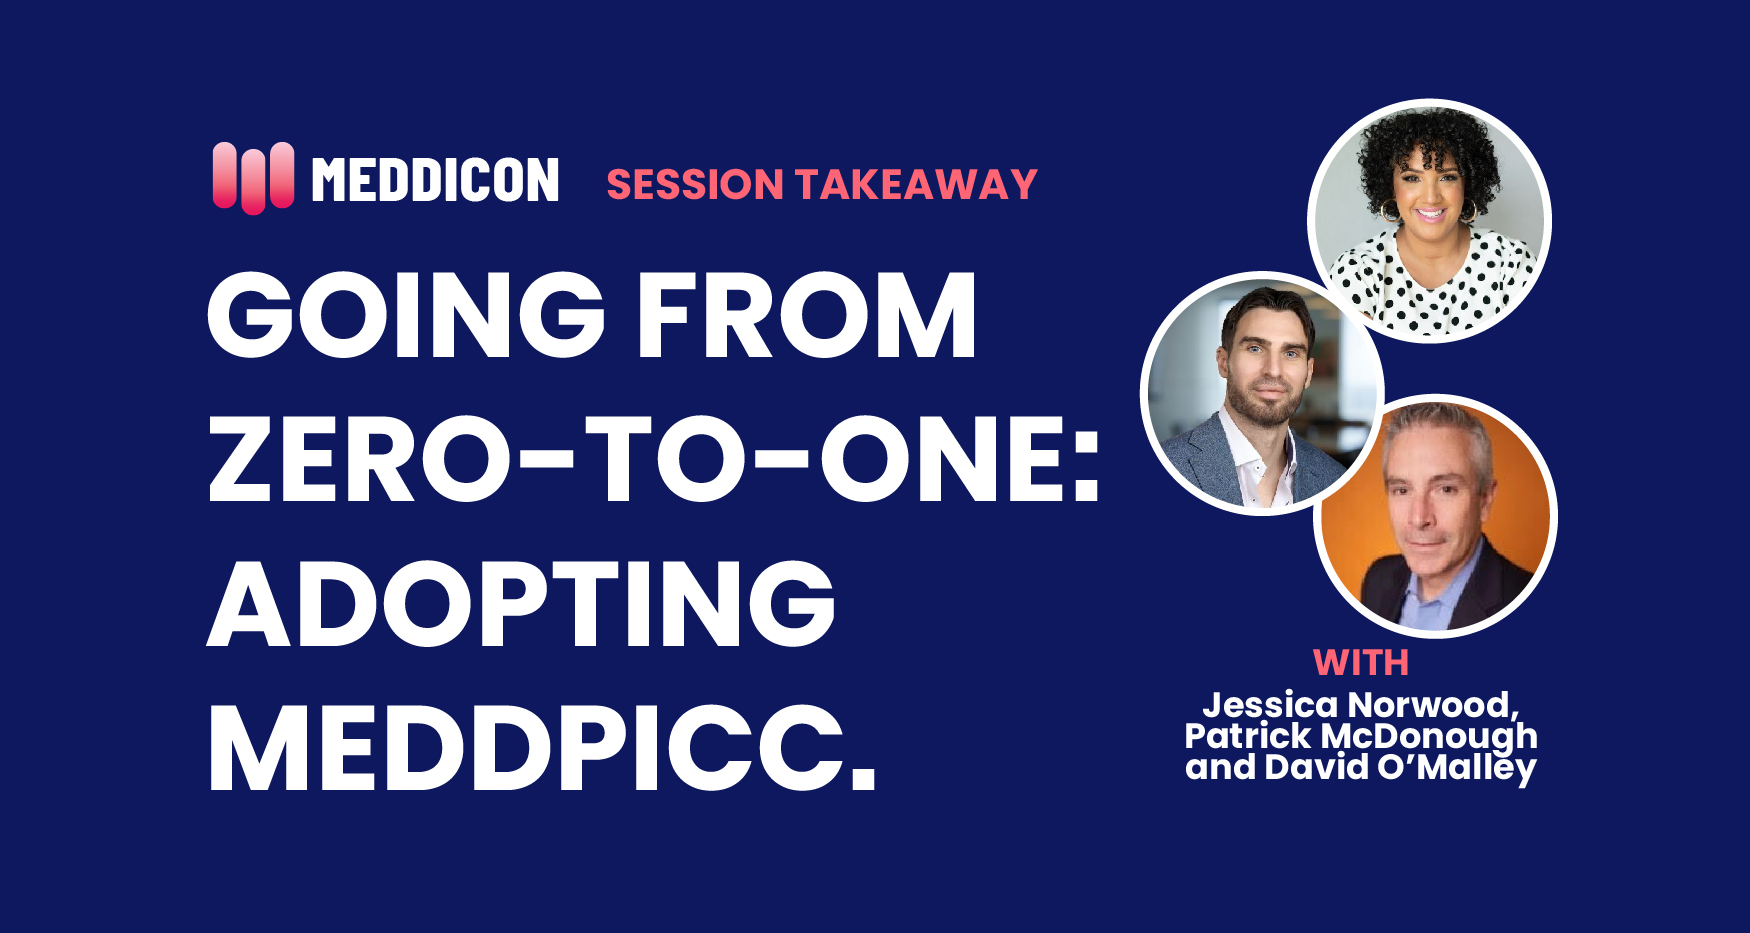 Key Takeaways: Day Zero to One in Adopting MEDDPICC